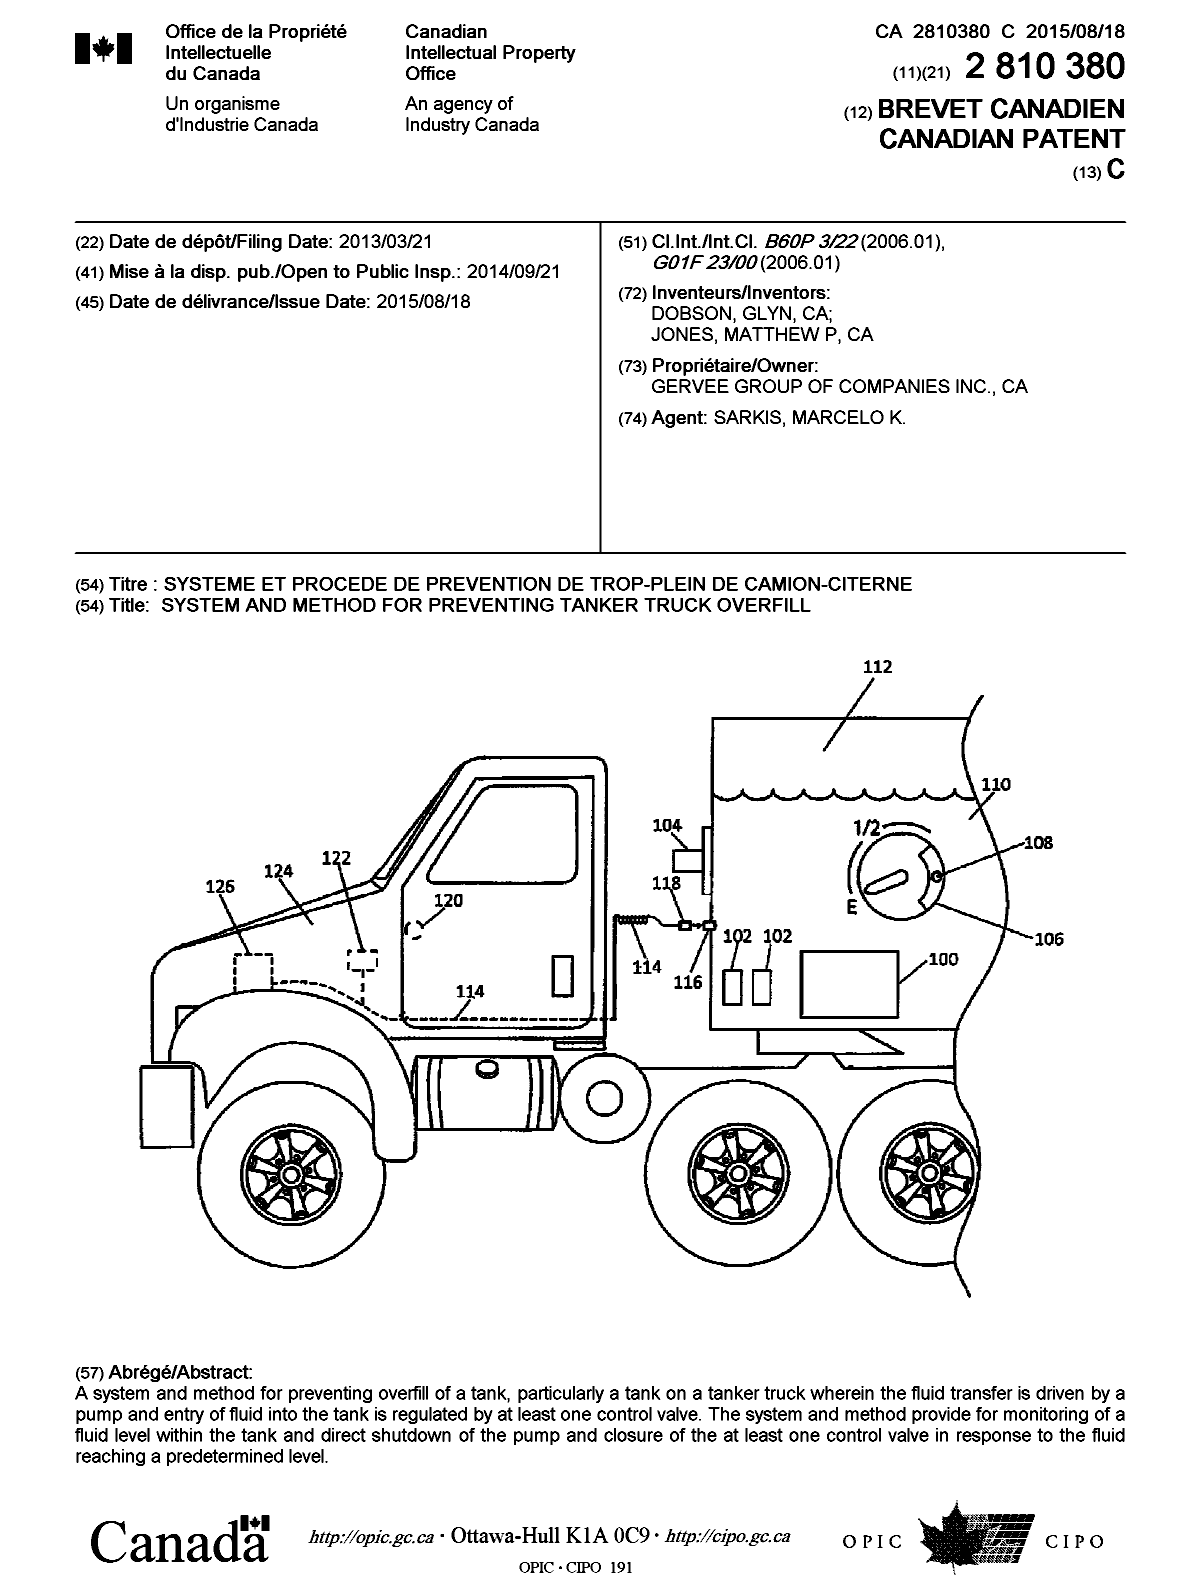 Document de brevet canadien 2810380. Page couverture 20141222. Image 1 de 1